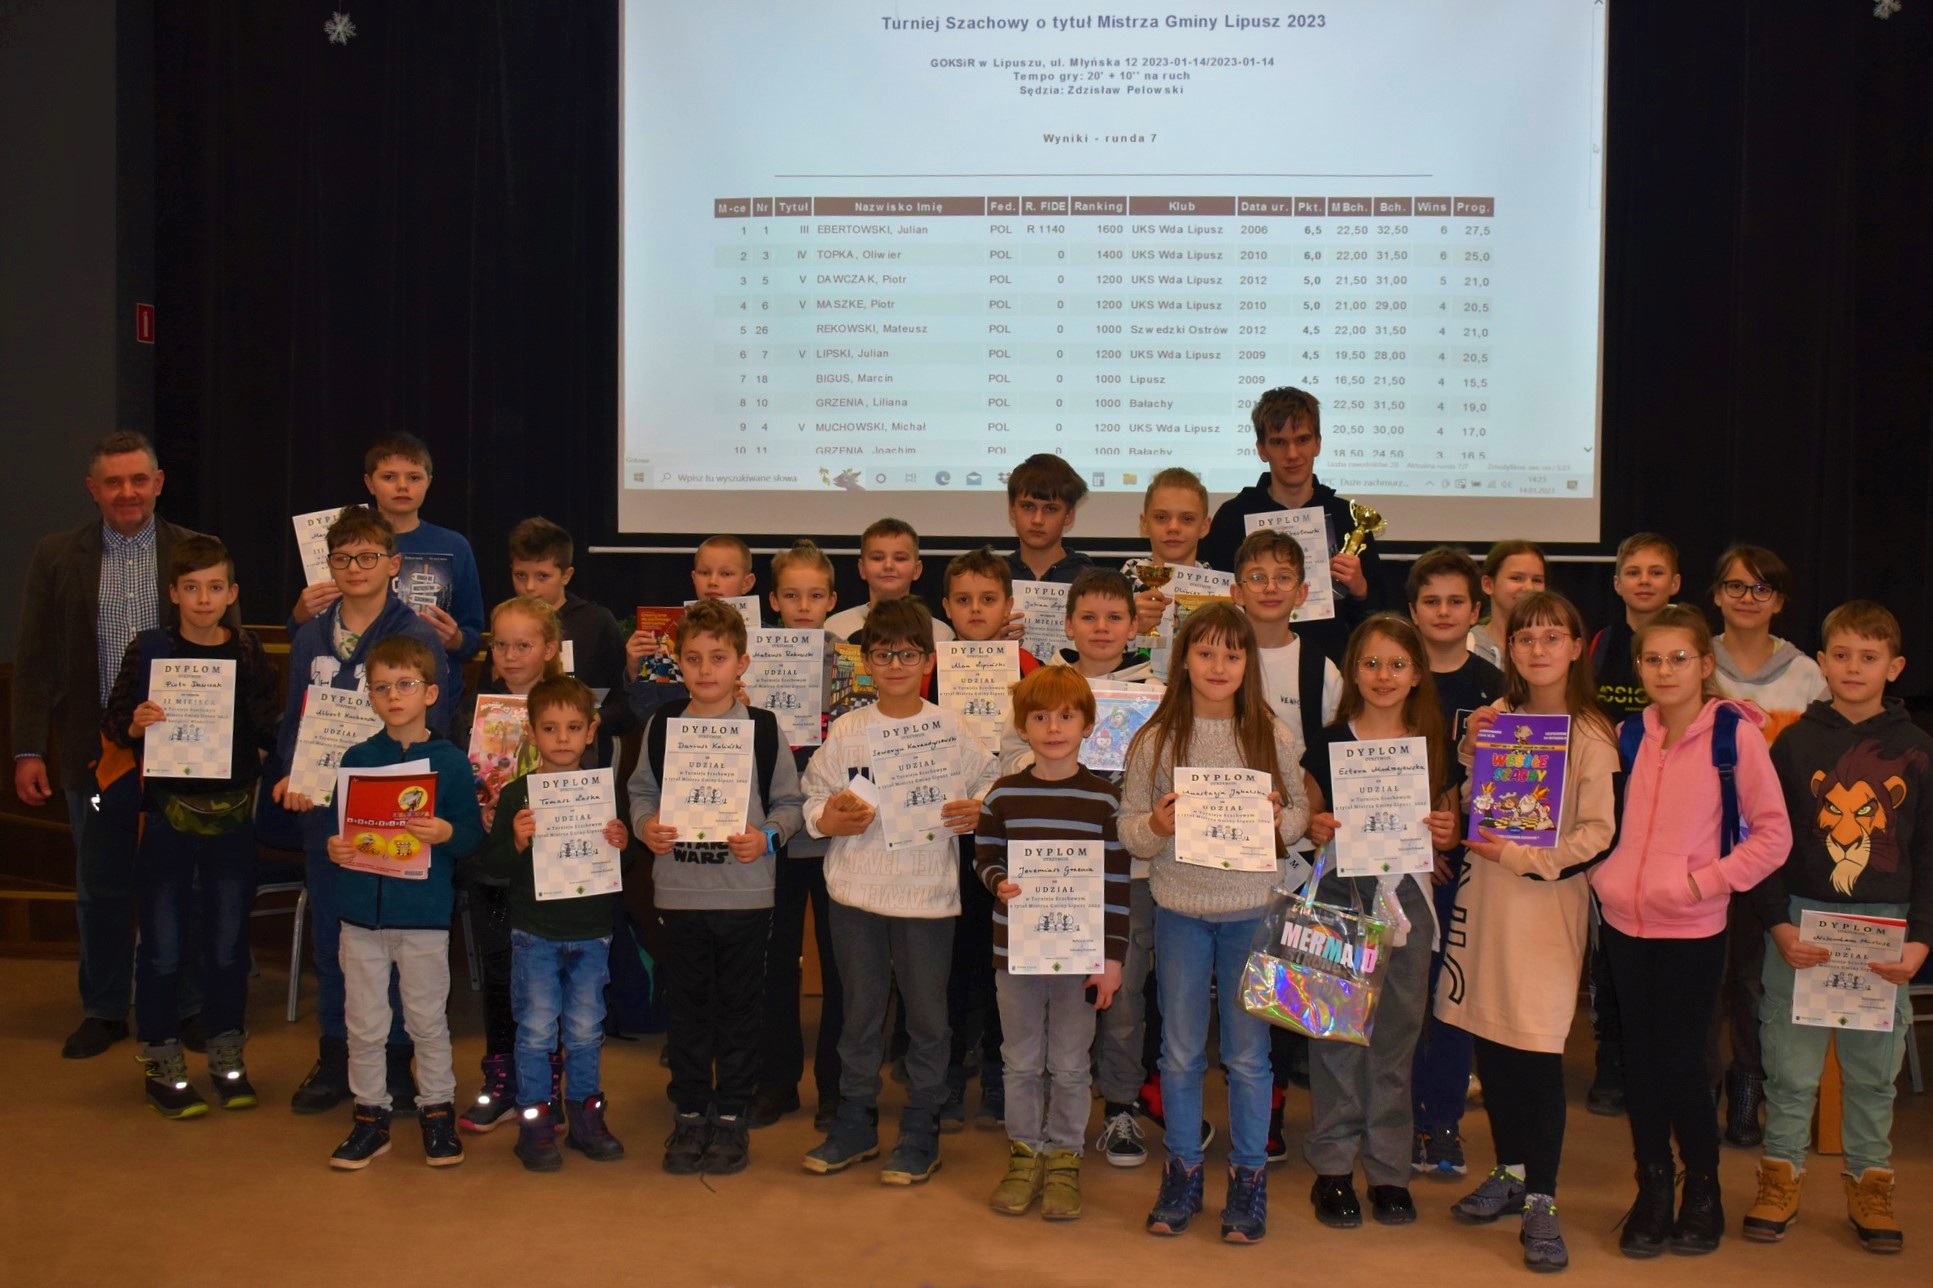 zdjęcie grupy wszystkich uczestników turnieju szachowego o tytuł Mistrza Gminy Lipusz 2023 wraz z nagrodami i medalami